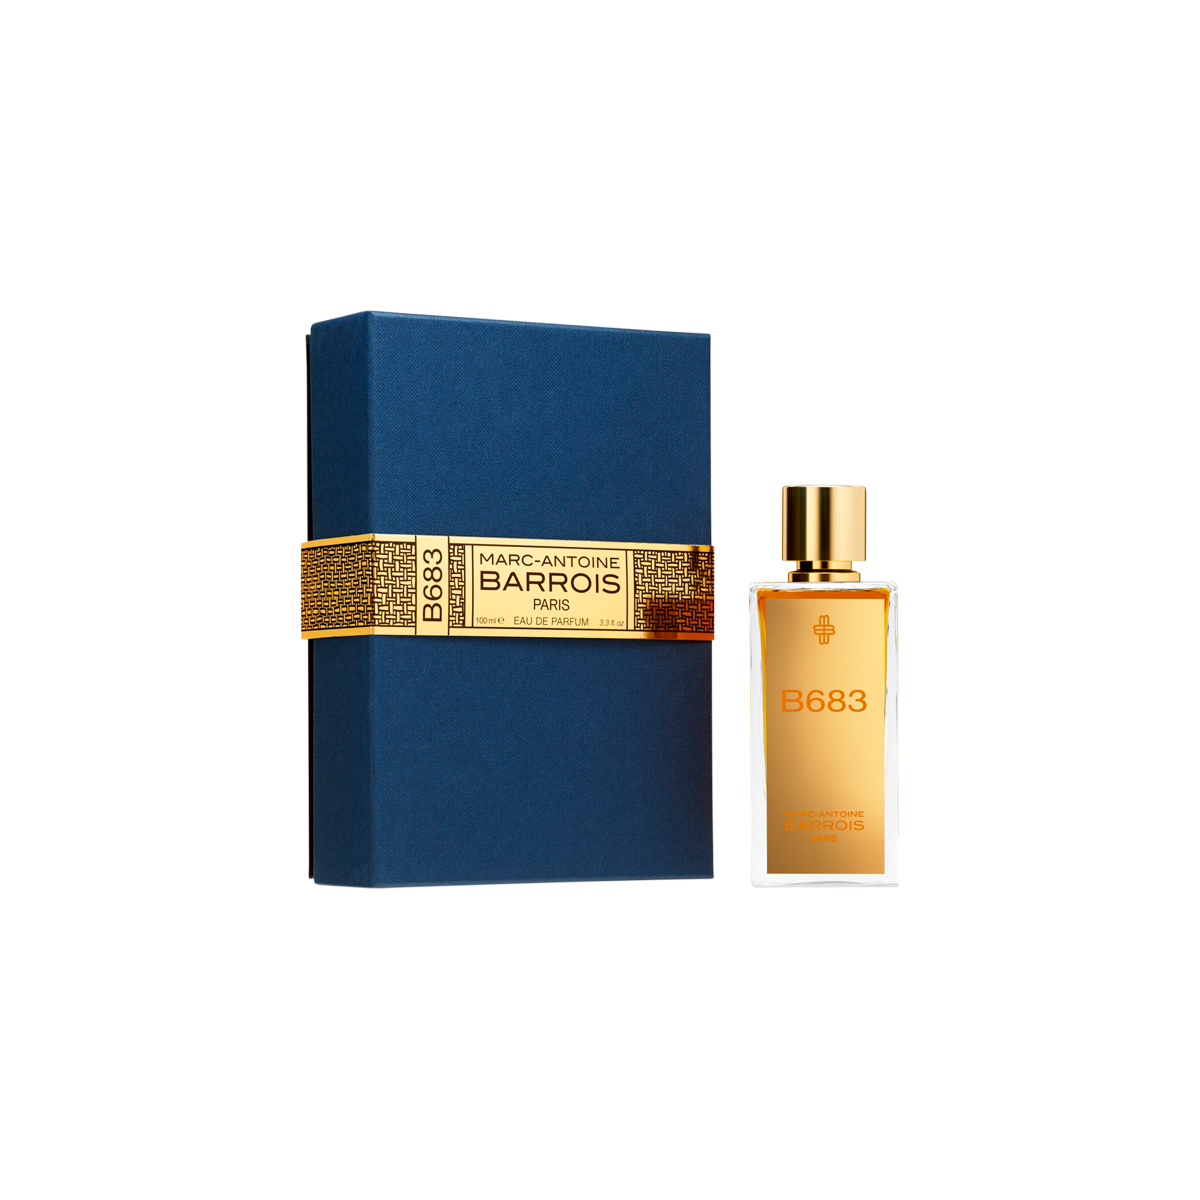 Marc-Antoine Barrois - B683 Eau de Parfum